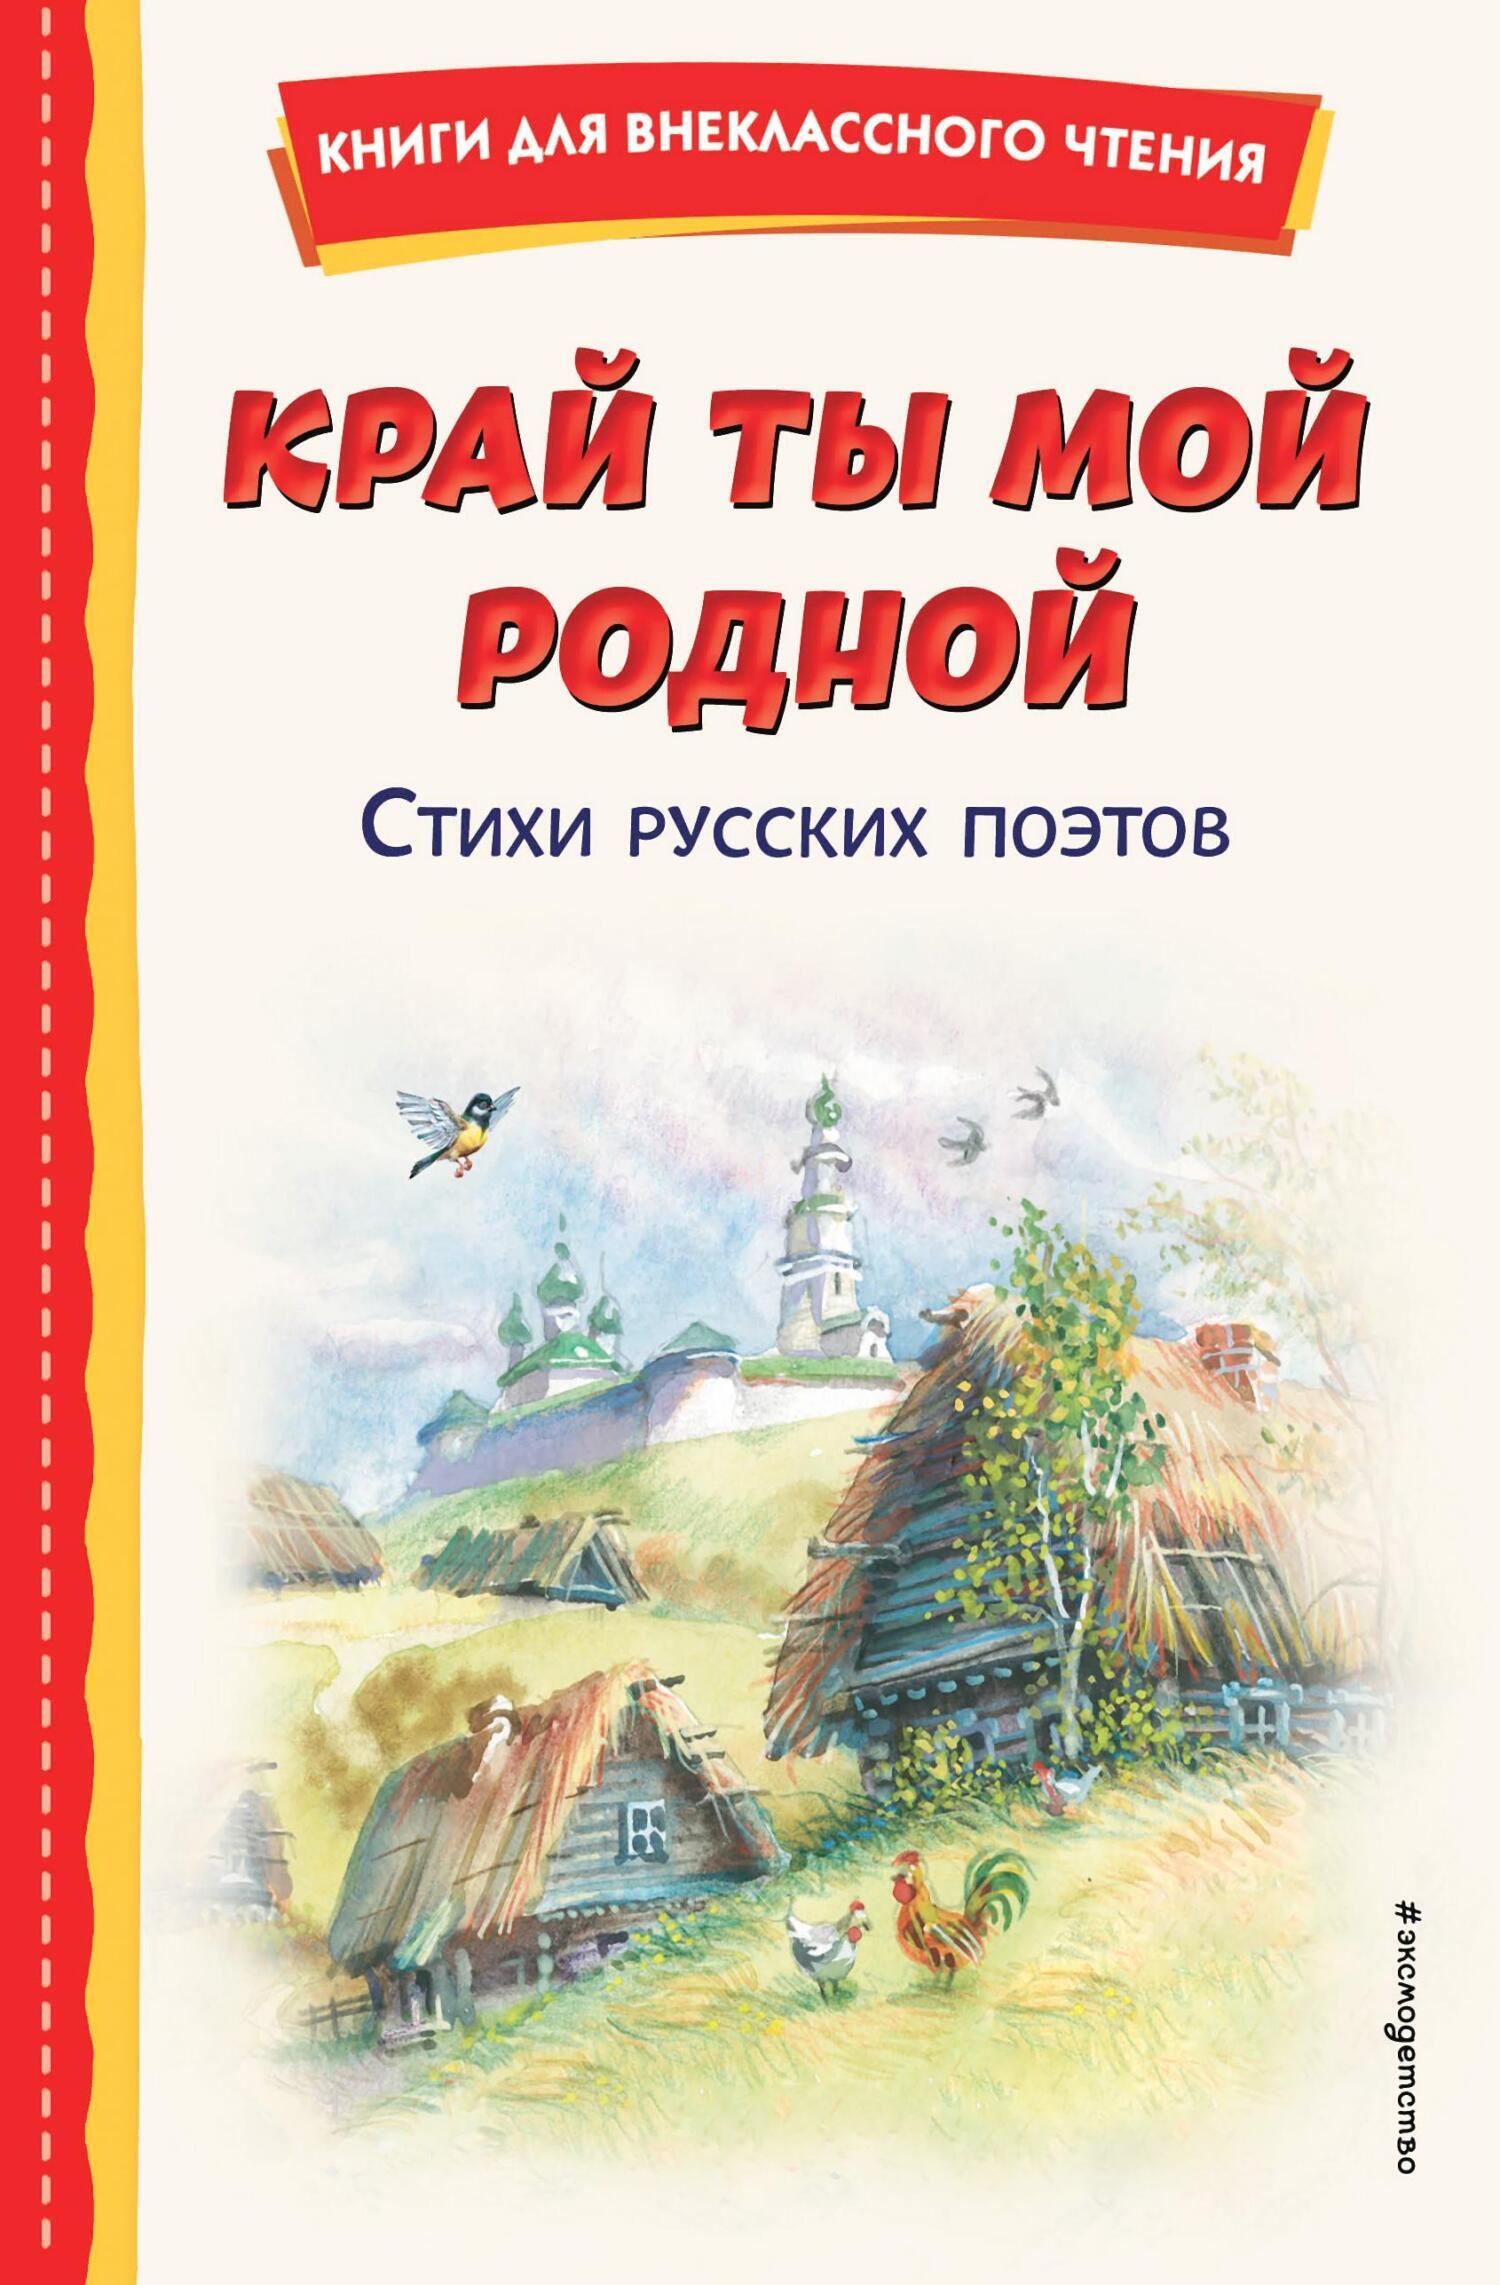 Купить детские книги сказки во Владивостоке | Овита